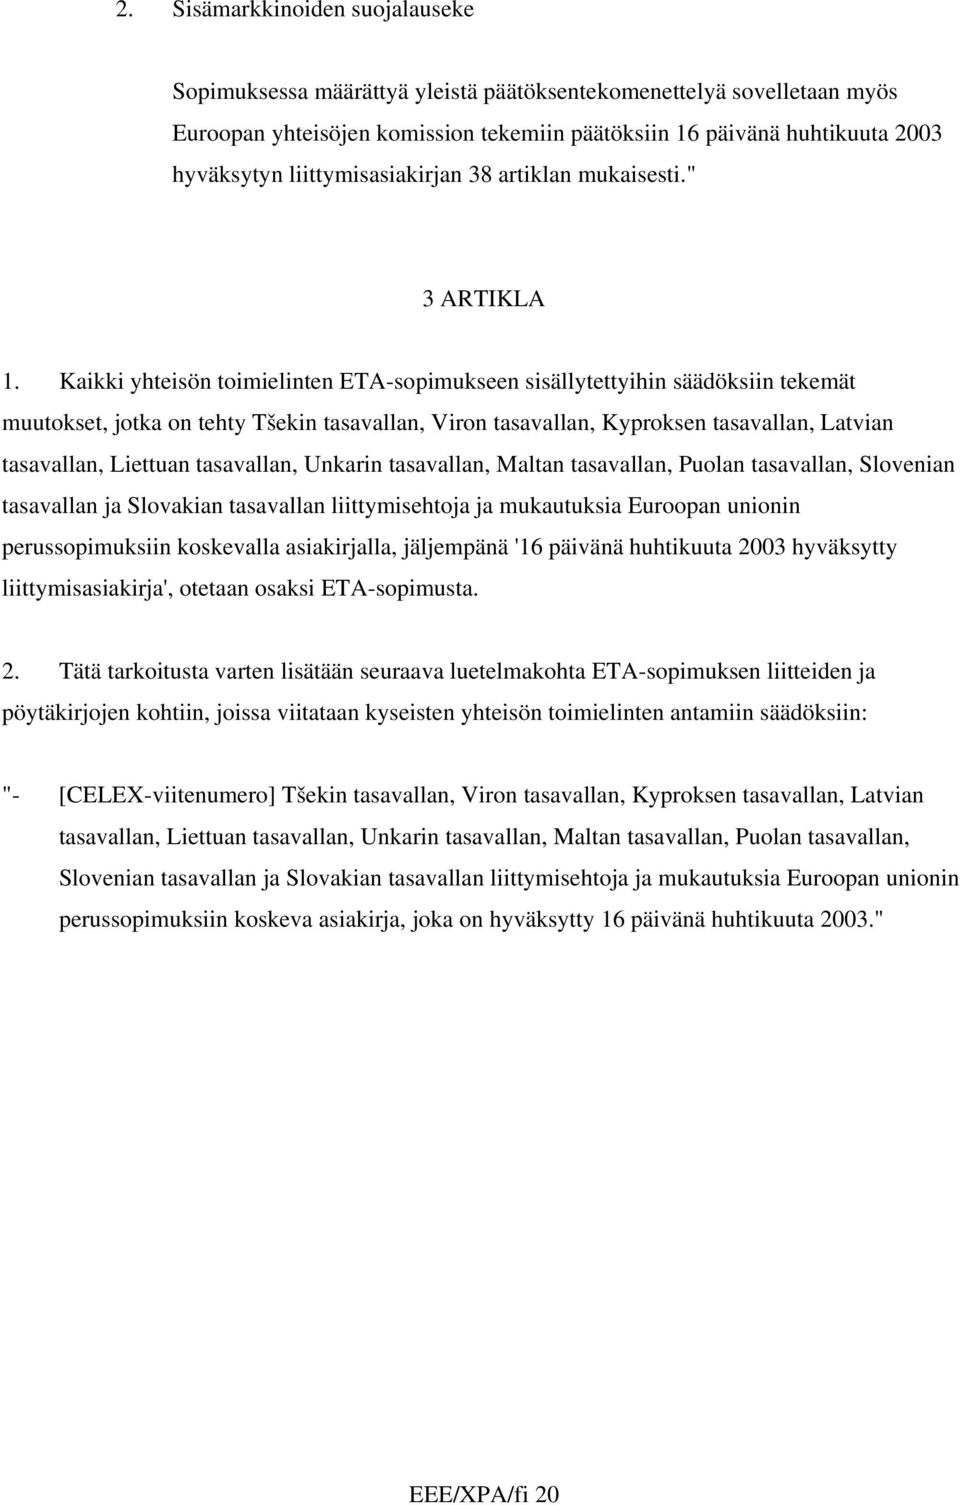 Kaikki yhteisön toimielinten ETA-sopimukseen sisällytettyihin säädöksiin tekemät muutokset, jotka on tehty Tšekin tasavallan, Viron tasavallan, Kyproksen tasavallan, Latvian tasavallan, Liettuan